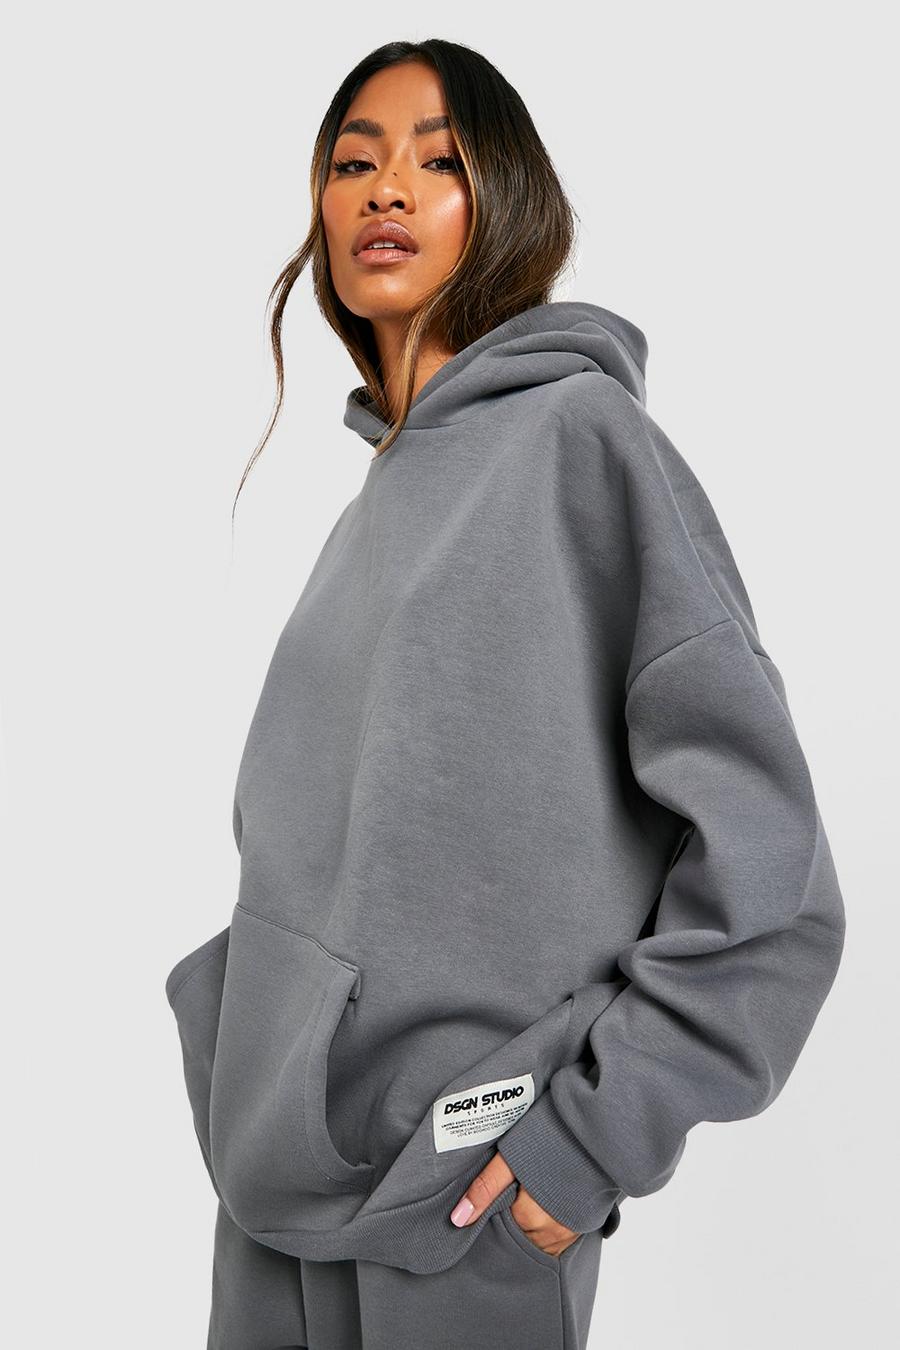 Charcoal Dsgn Studio Oversize hoodie